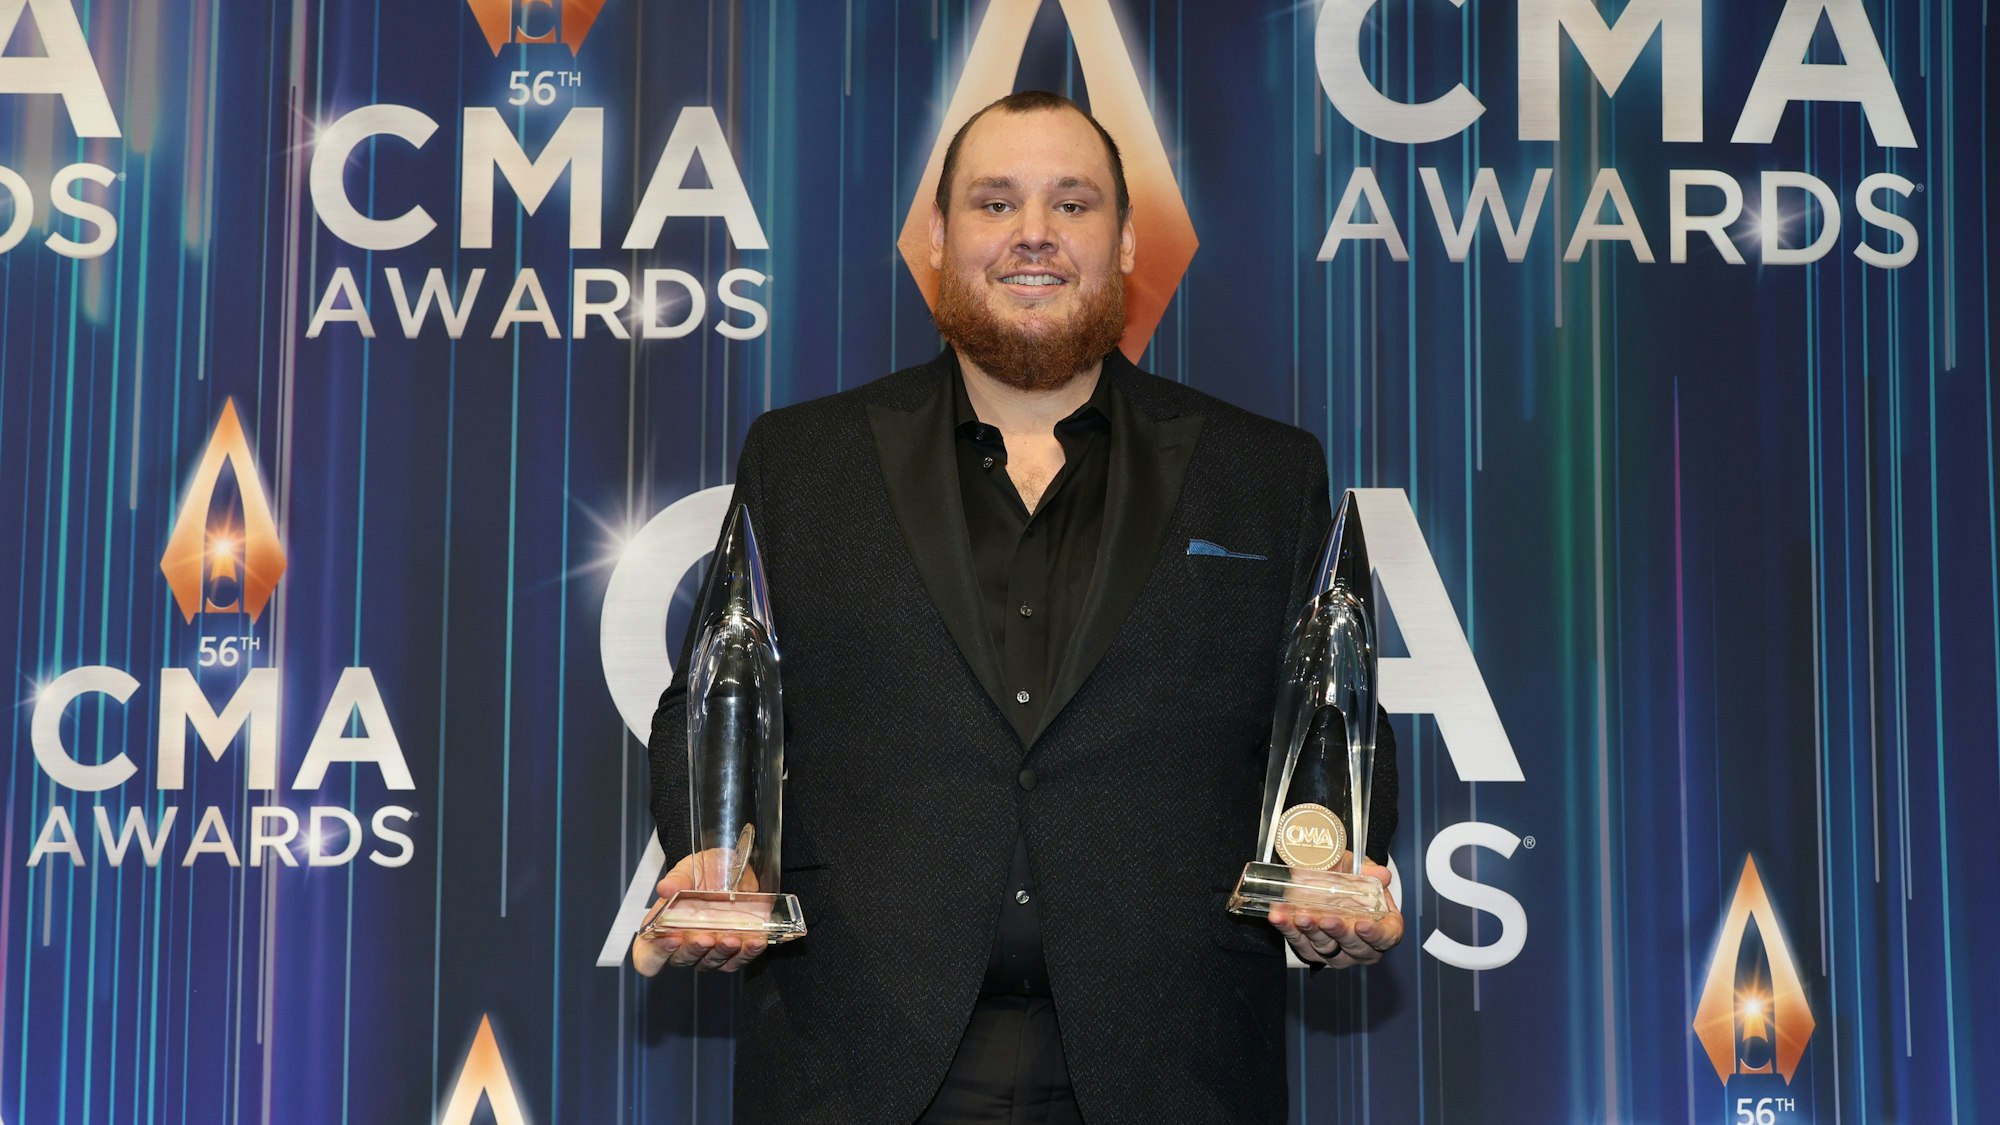 Luke Combs mit den CMA Awards als Entertainer des Jahres und Album des Jahres. Er trägt einen schwarzen Anzug. Beide Trophäen in jeweils der einen Hand.